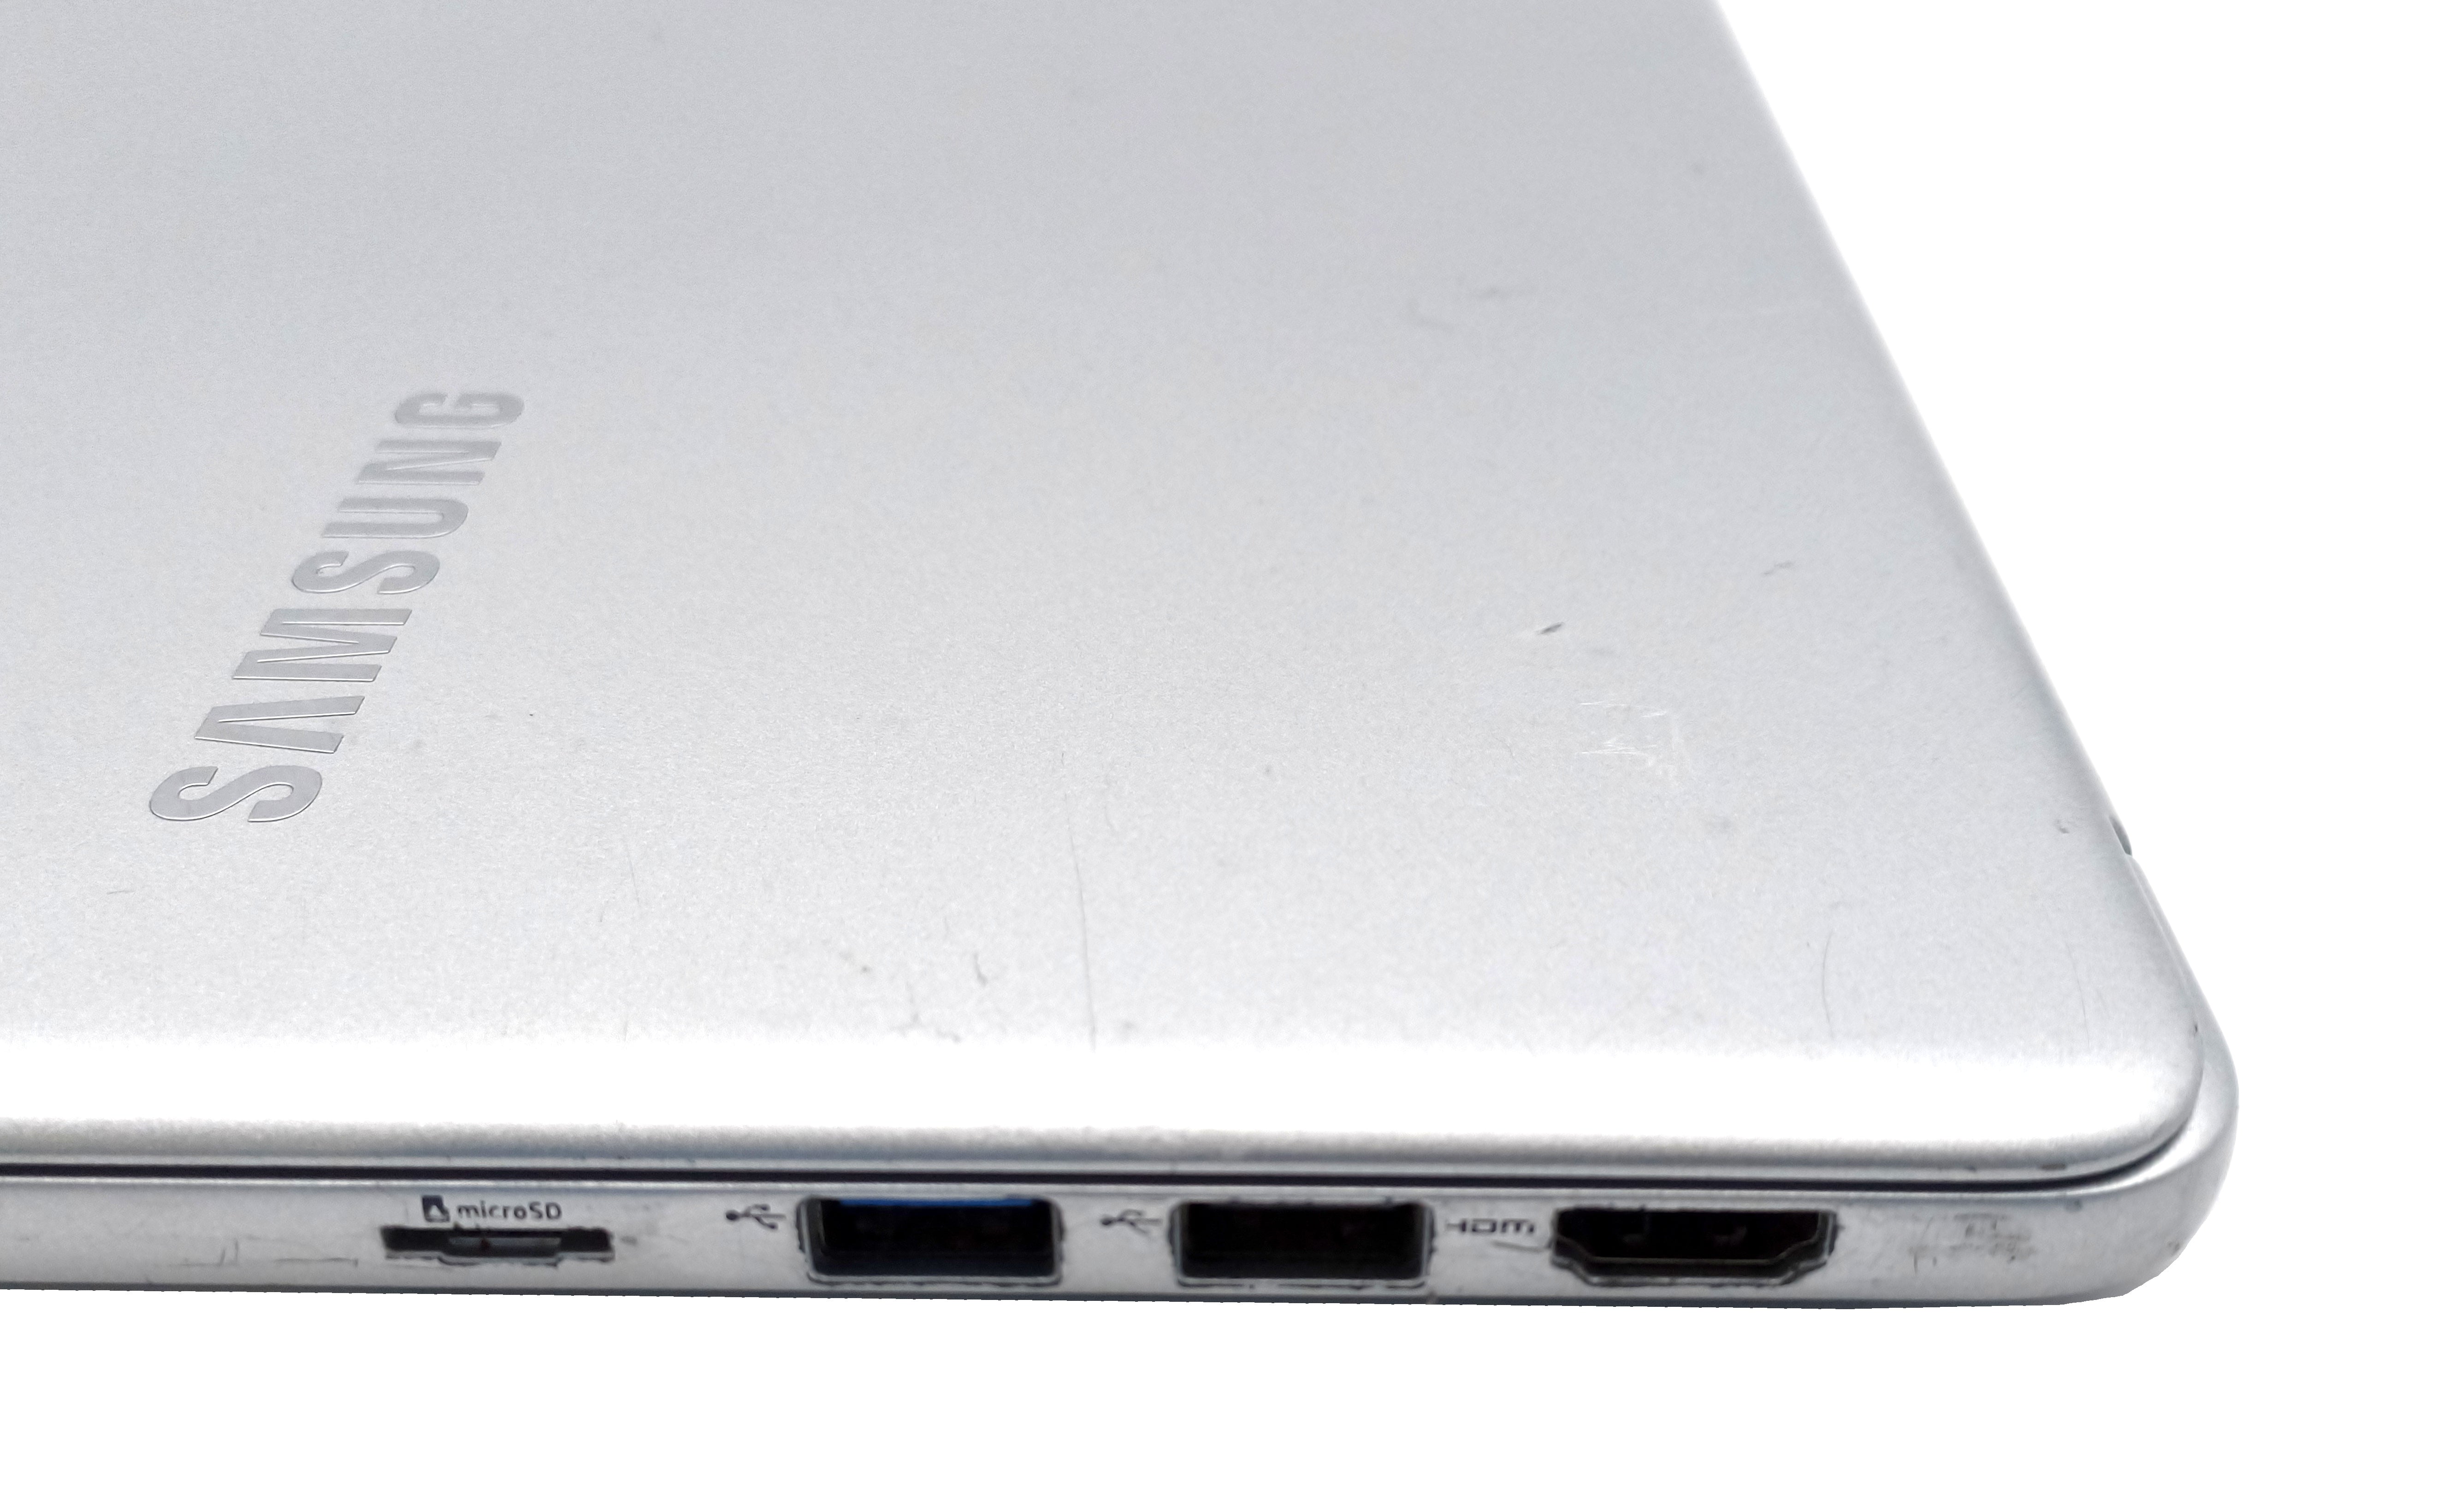 Samsung NP900X5T Laptop 15" i7 8th Gen 16GB RAM 256GB SSD GeForce MX150